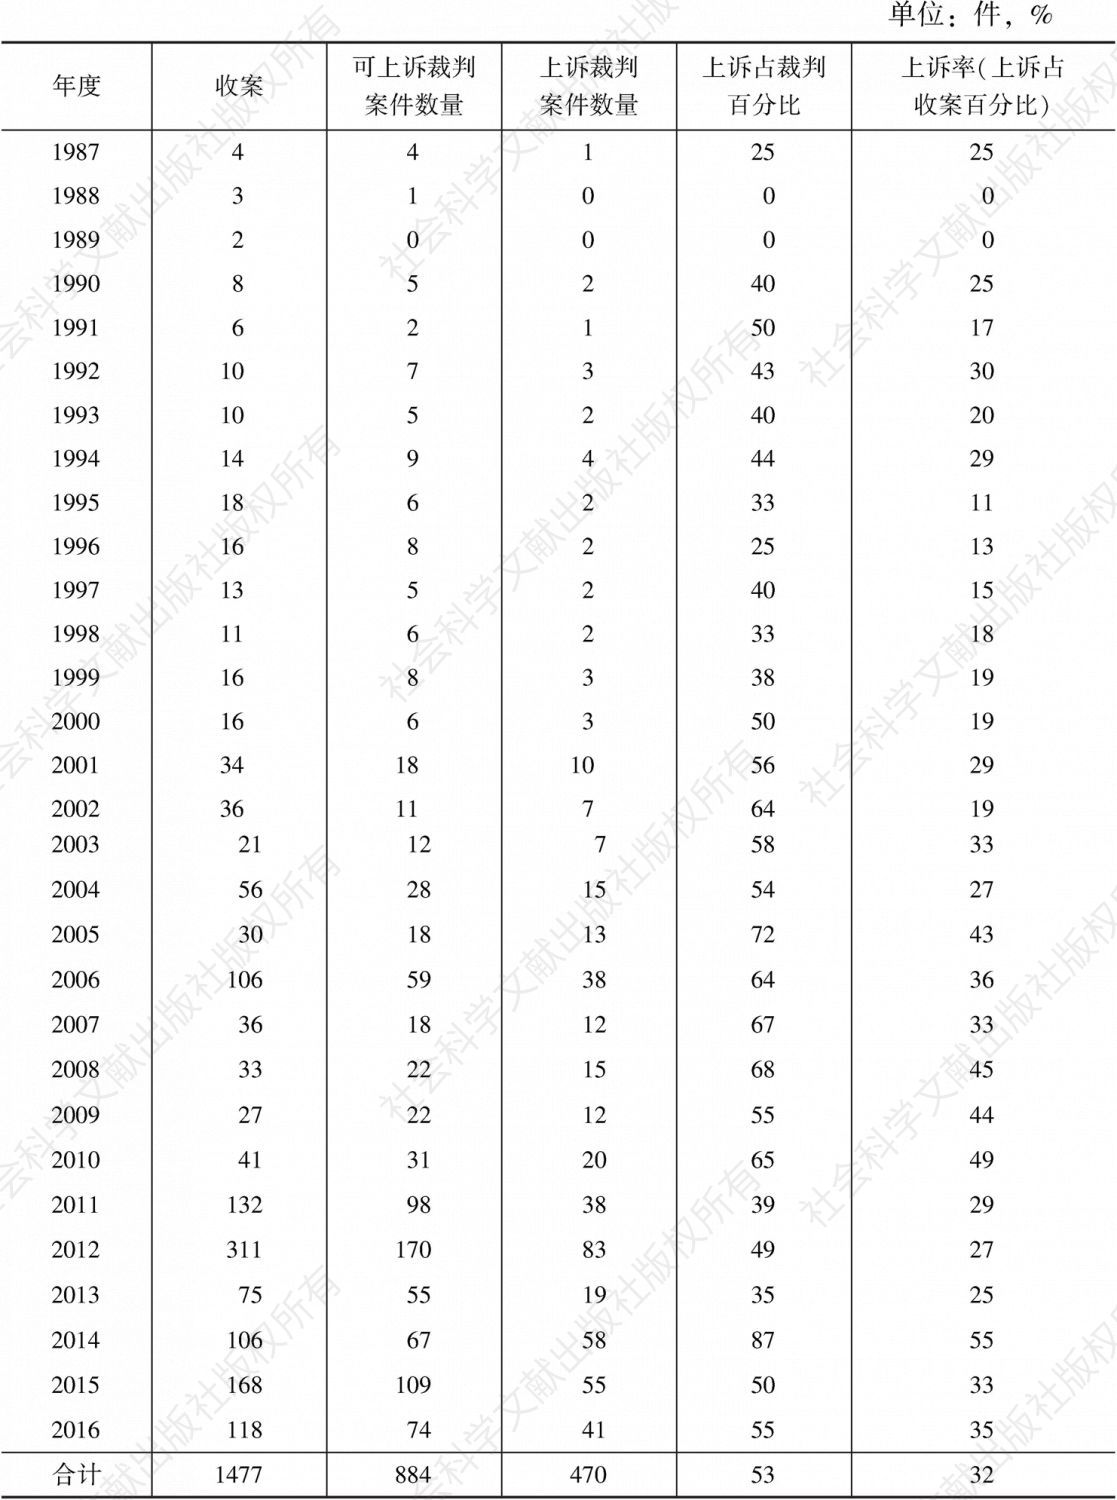 表2-22 1987～2016年R区法院行政案件上诉率统计